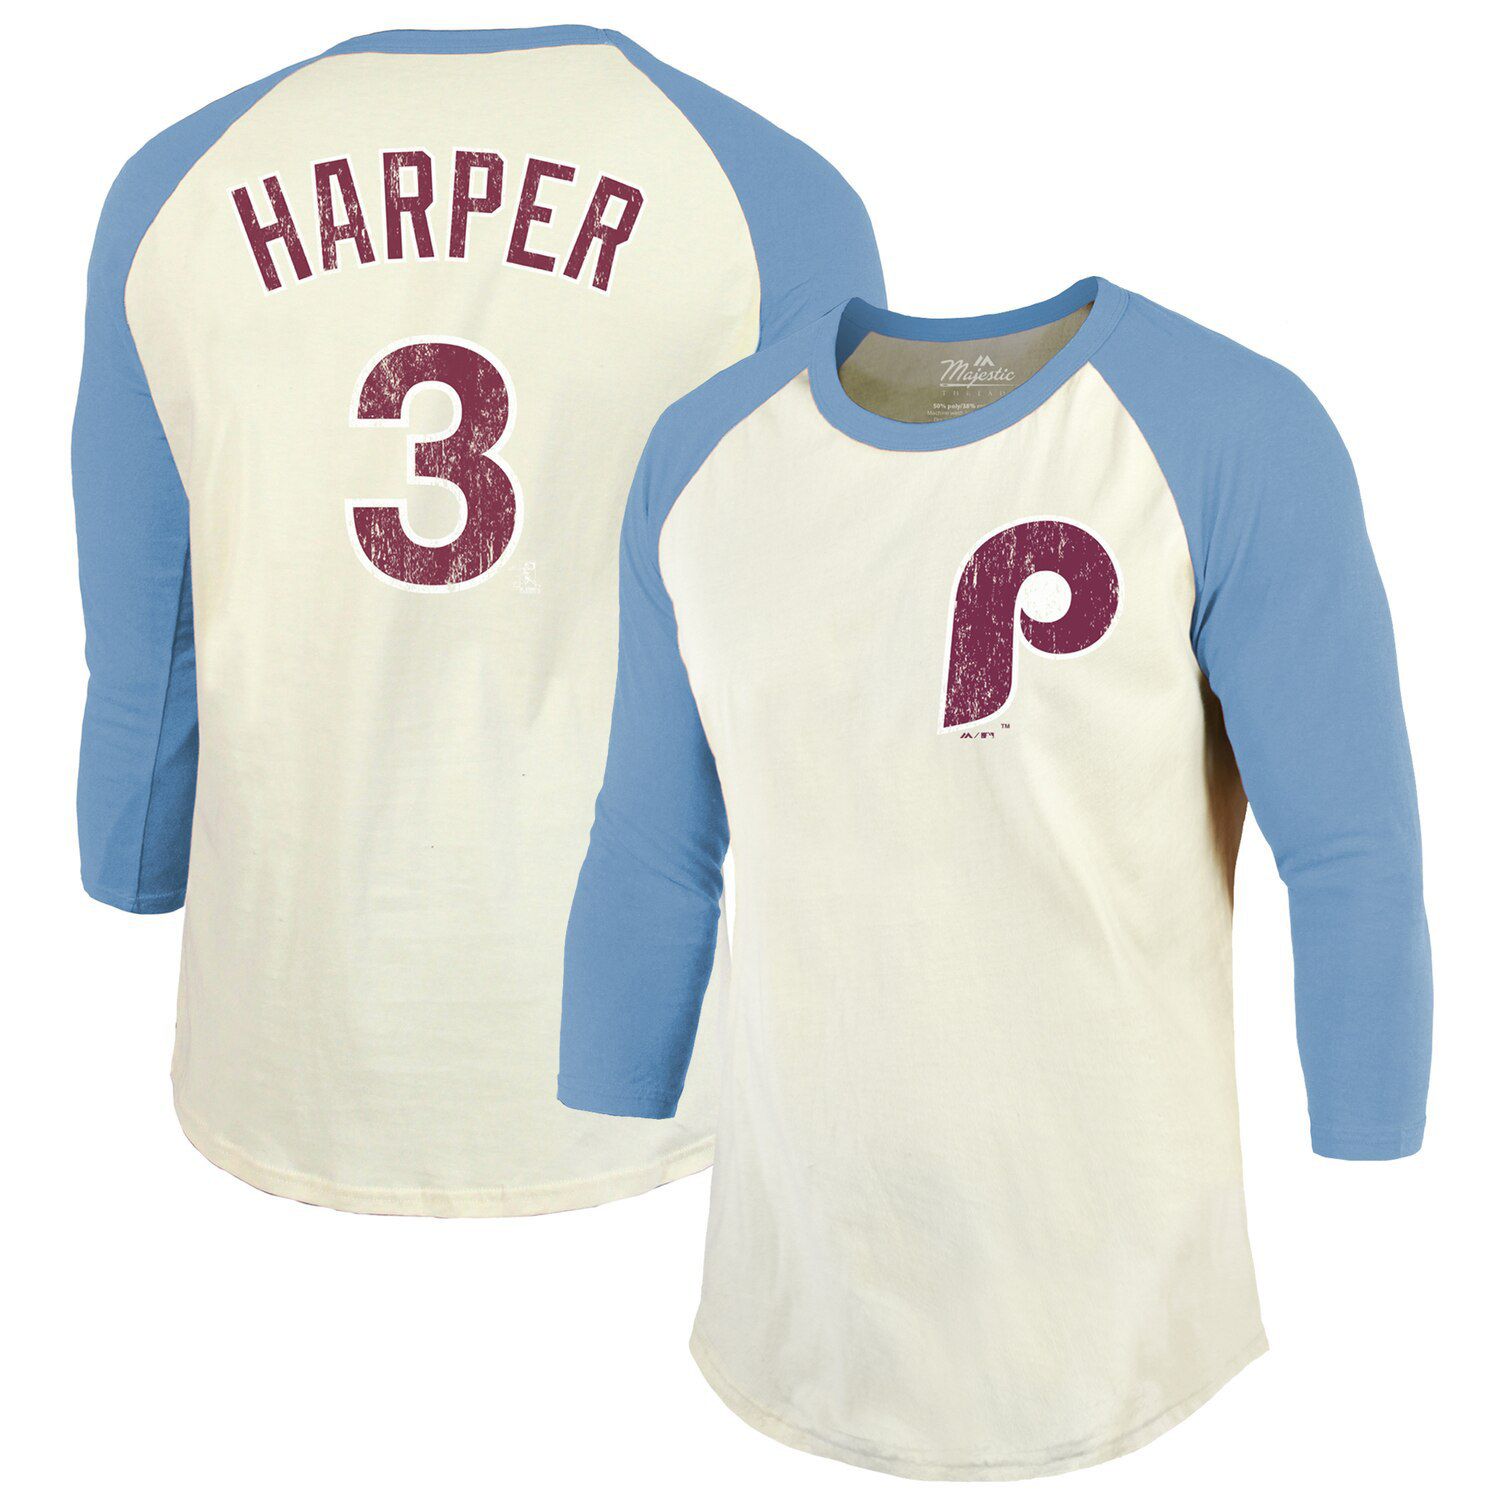 harper phillies shirt